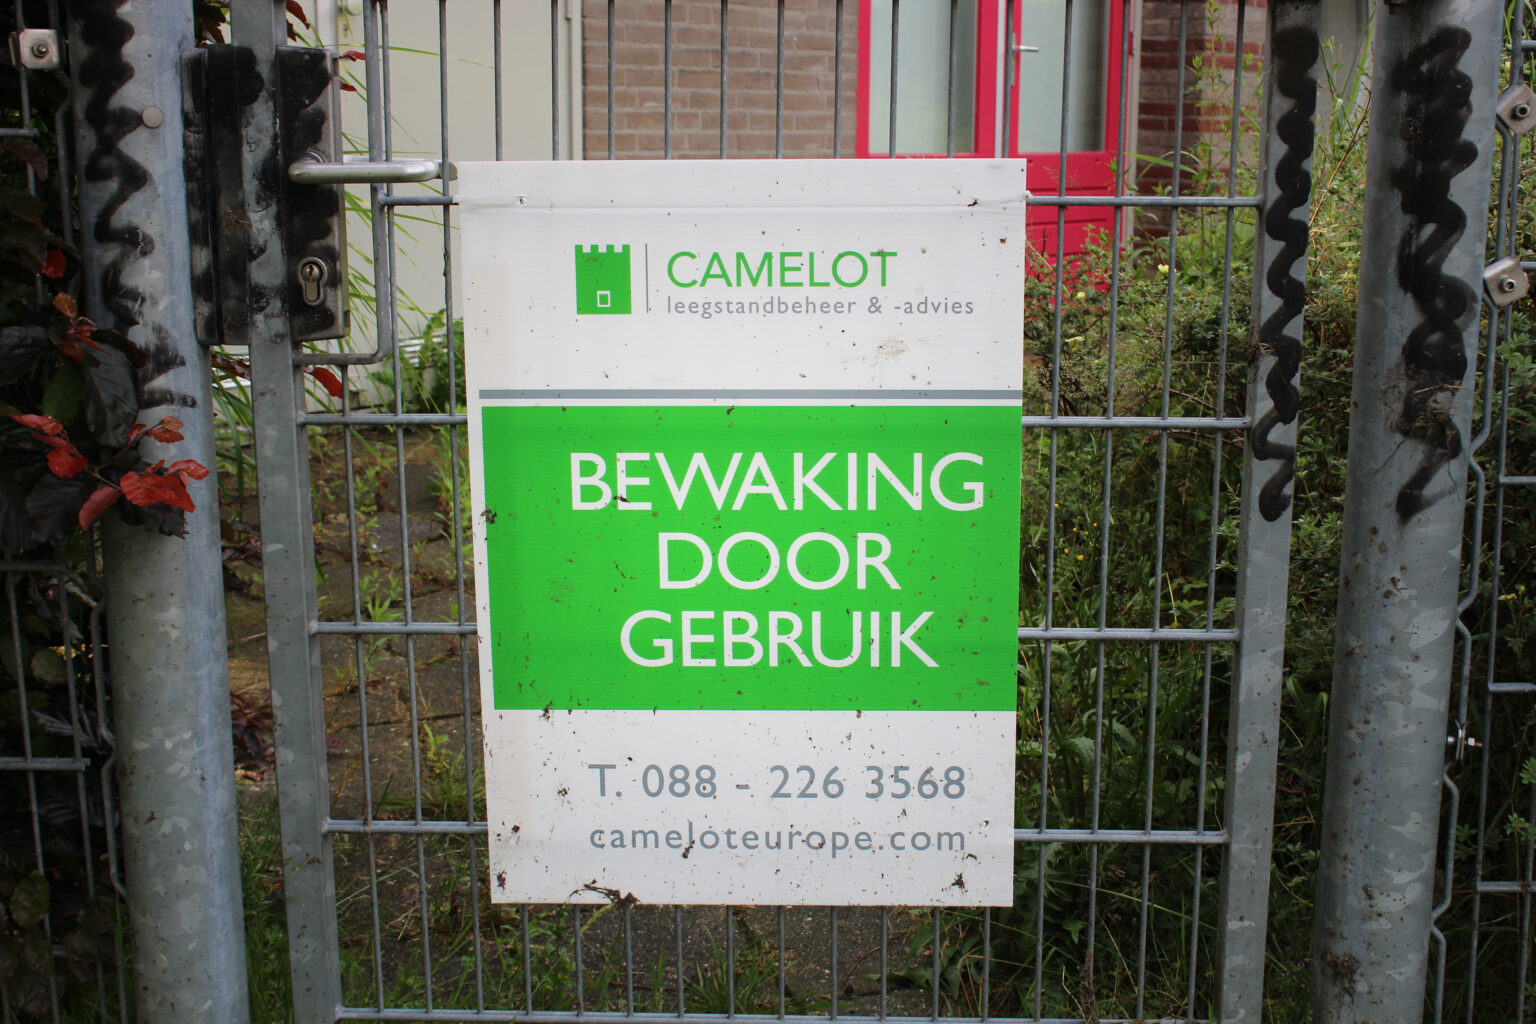 Keurmerk Leegstand Beheer trekt recht op gebruik van het keurmerk door Camelot in.